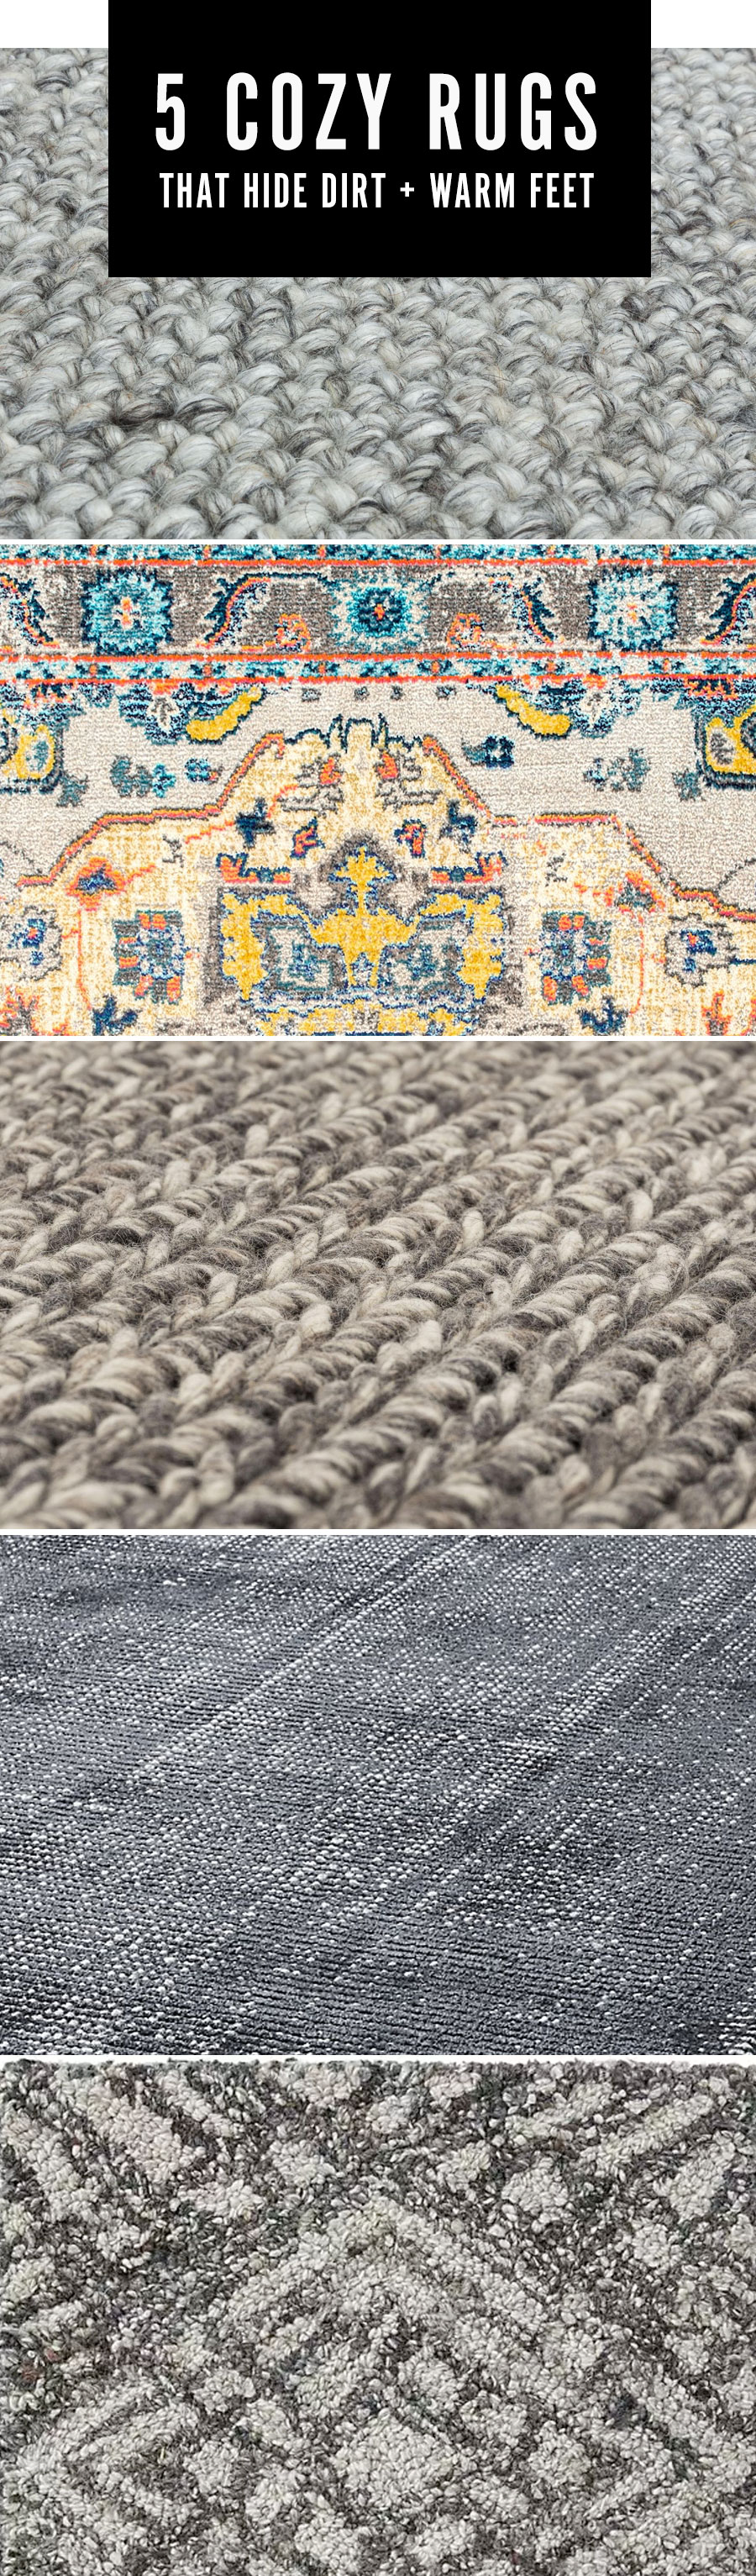 5 cozy rugs that hide dirt